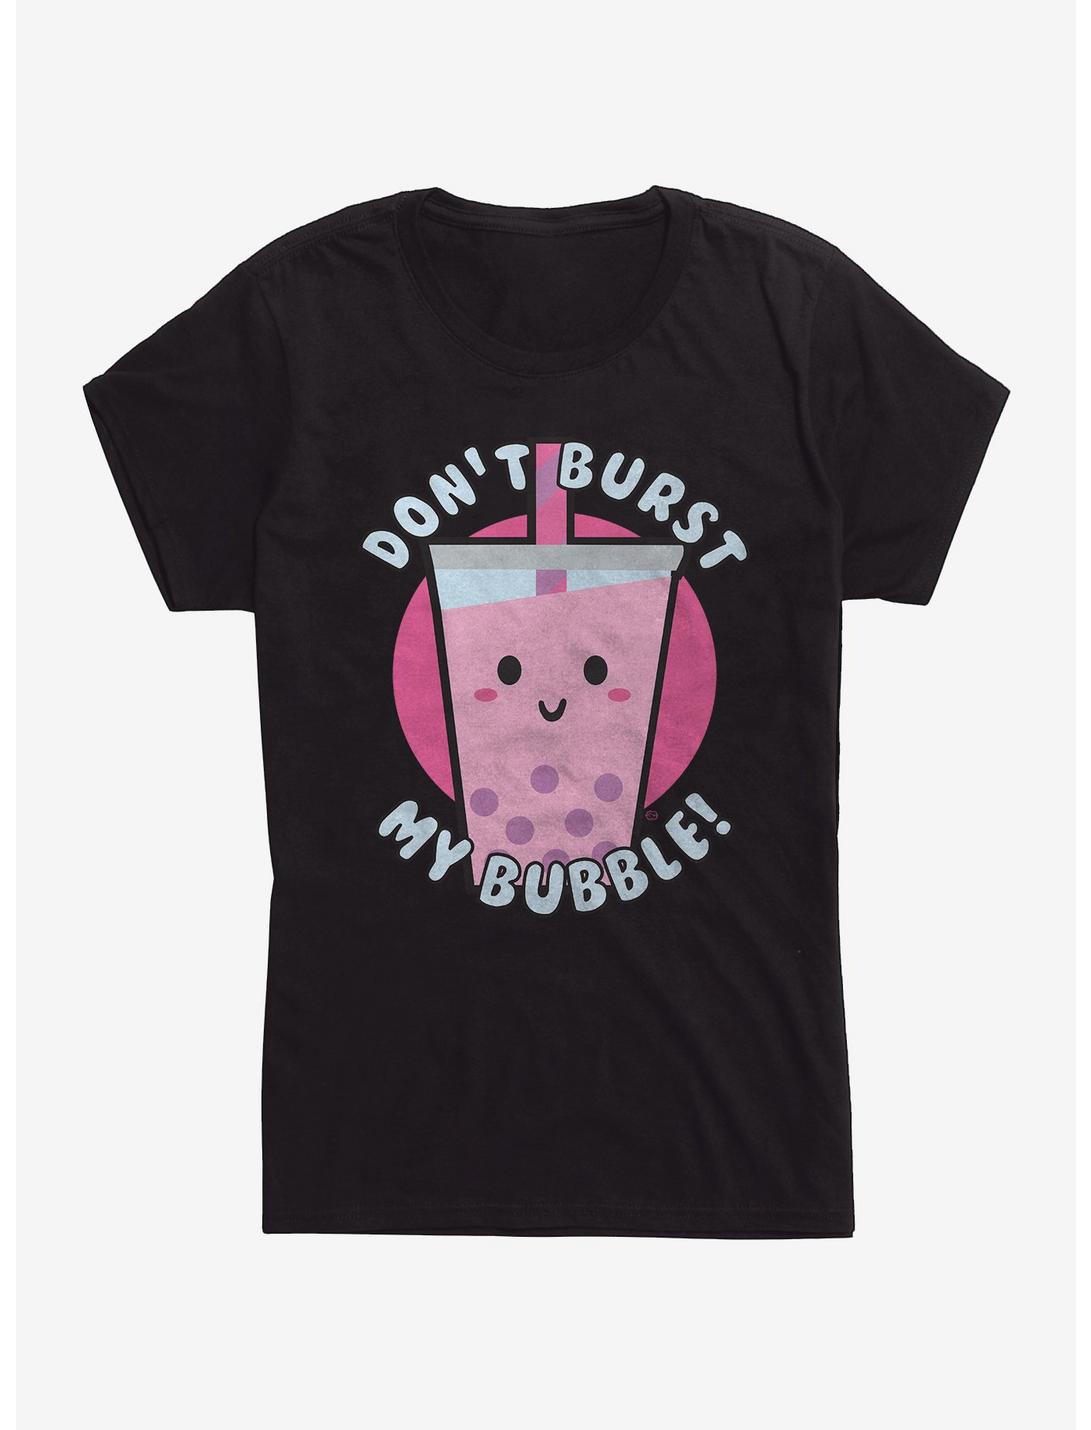 Don't Burst My Bubble Womens T-shirt, BLACK, hi-res